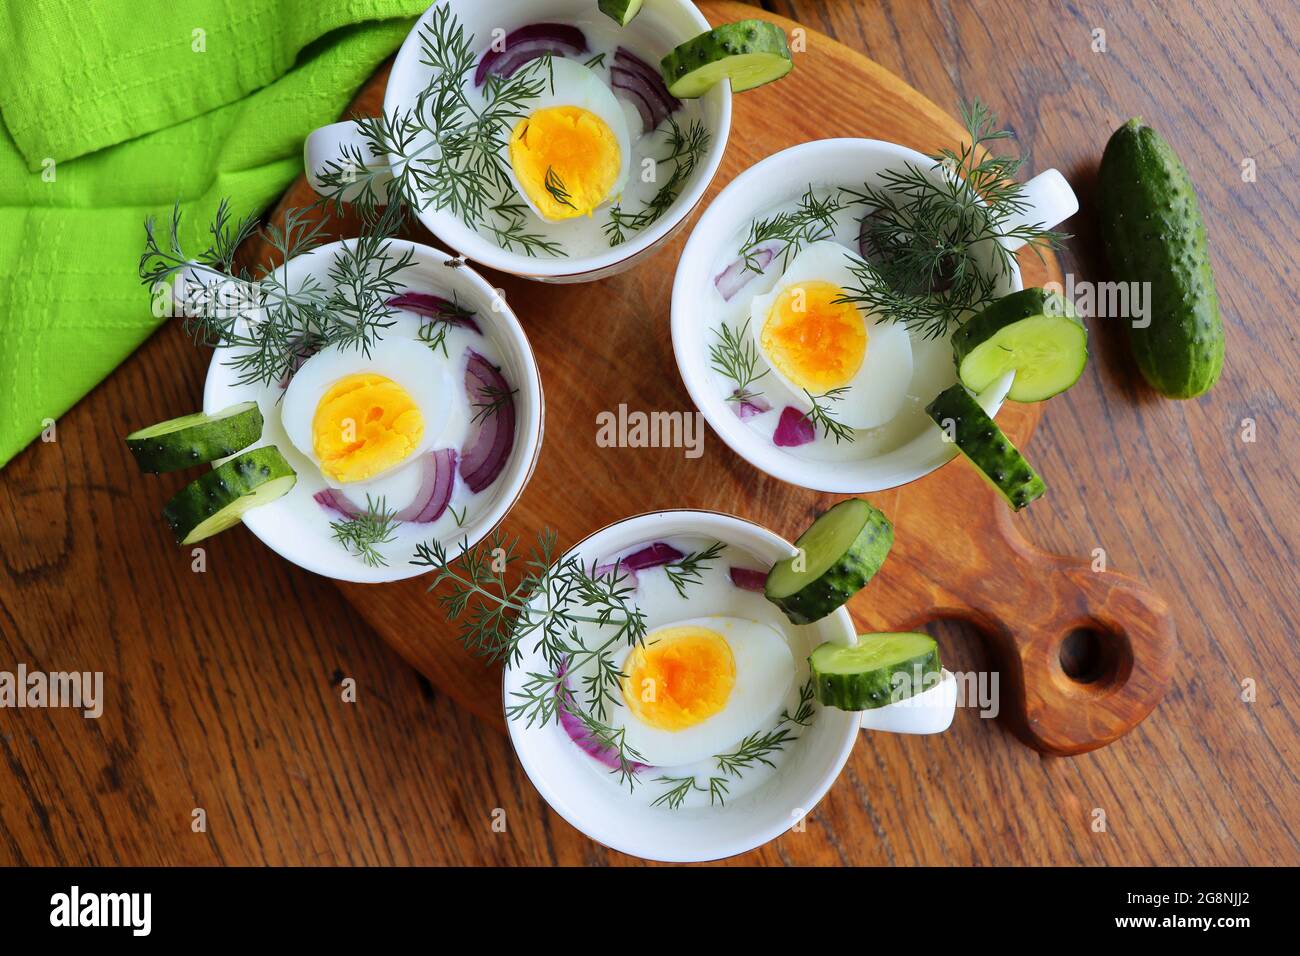 Soupe froide avec concombres, yaourt, œufs et herbes fraîches sur la table rustique en bois Banque D'Images